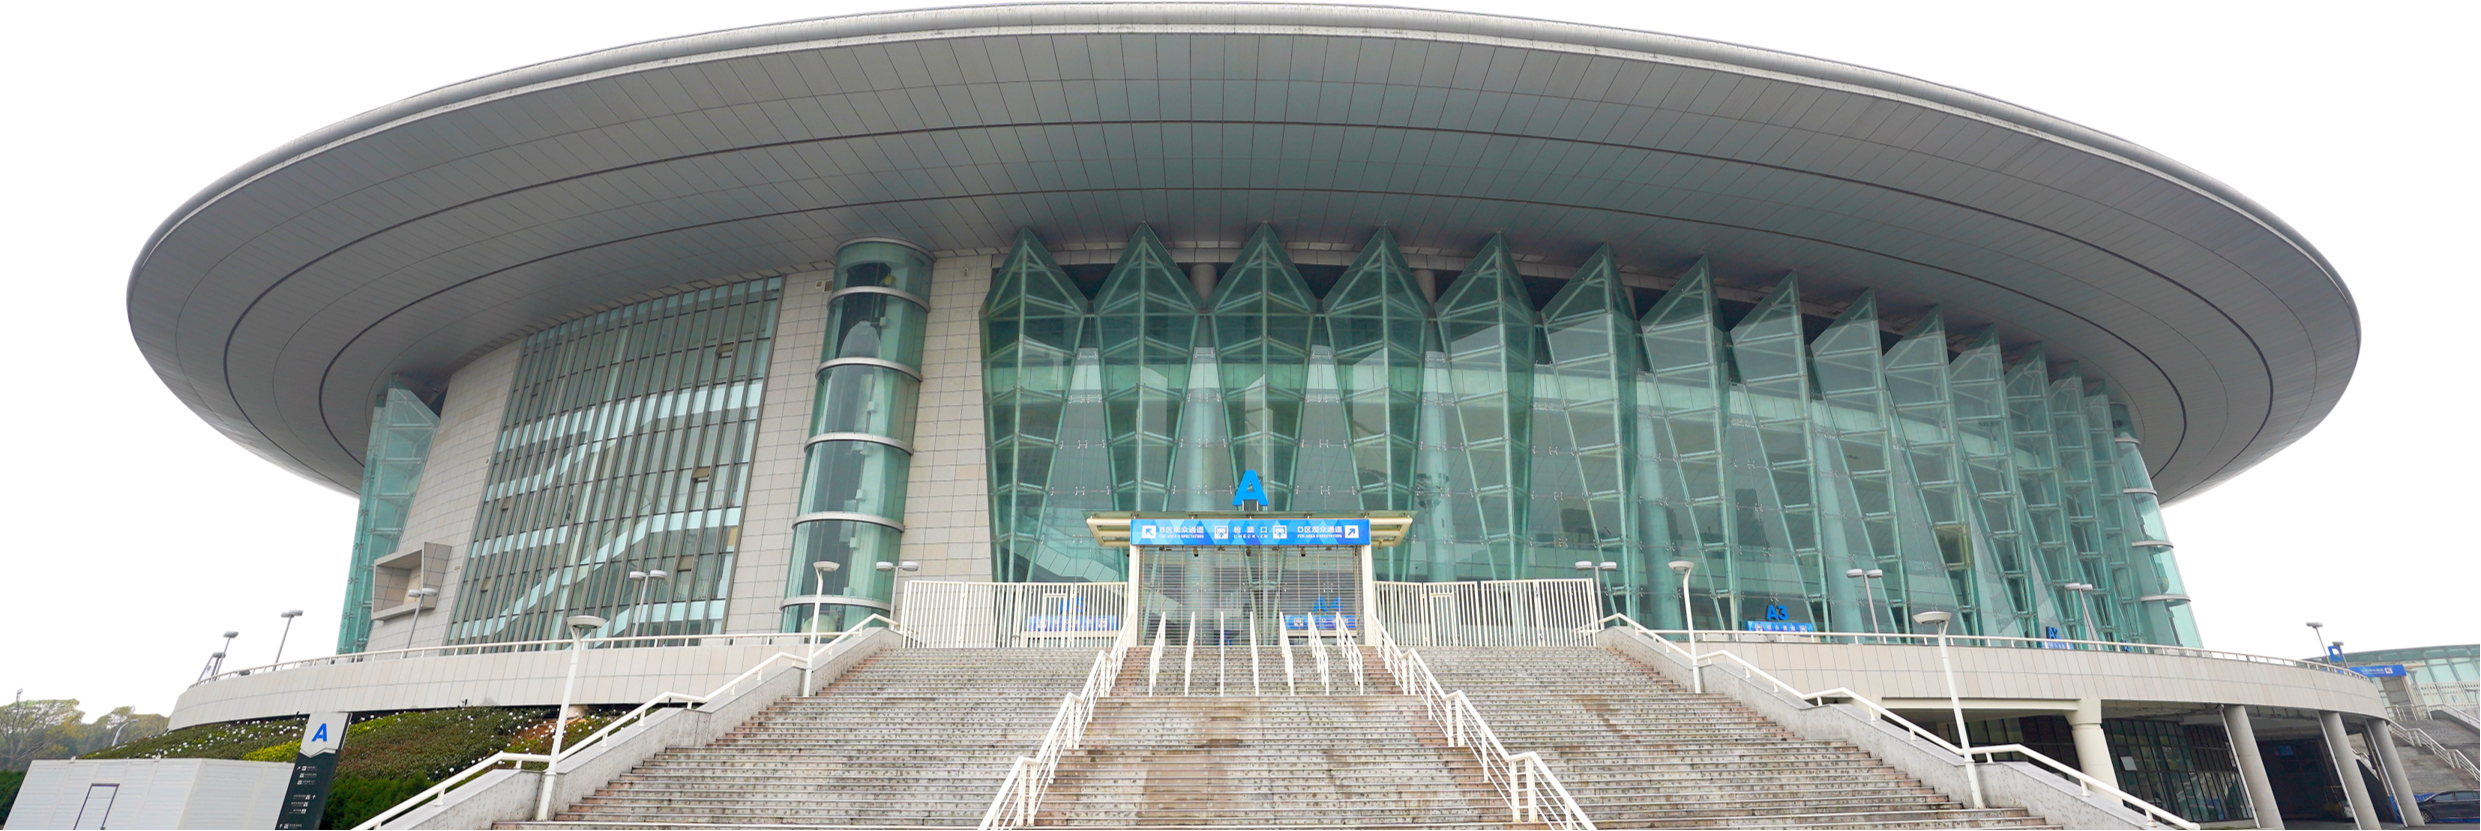 武汉体育中心七军会"一场两馆"综合改造项目体育馆装修工程